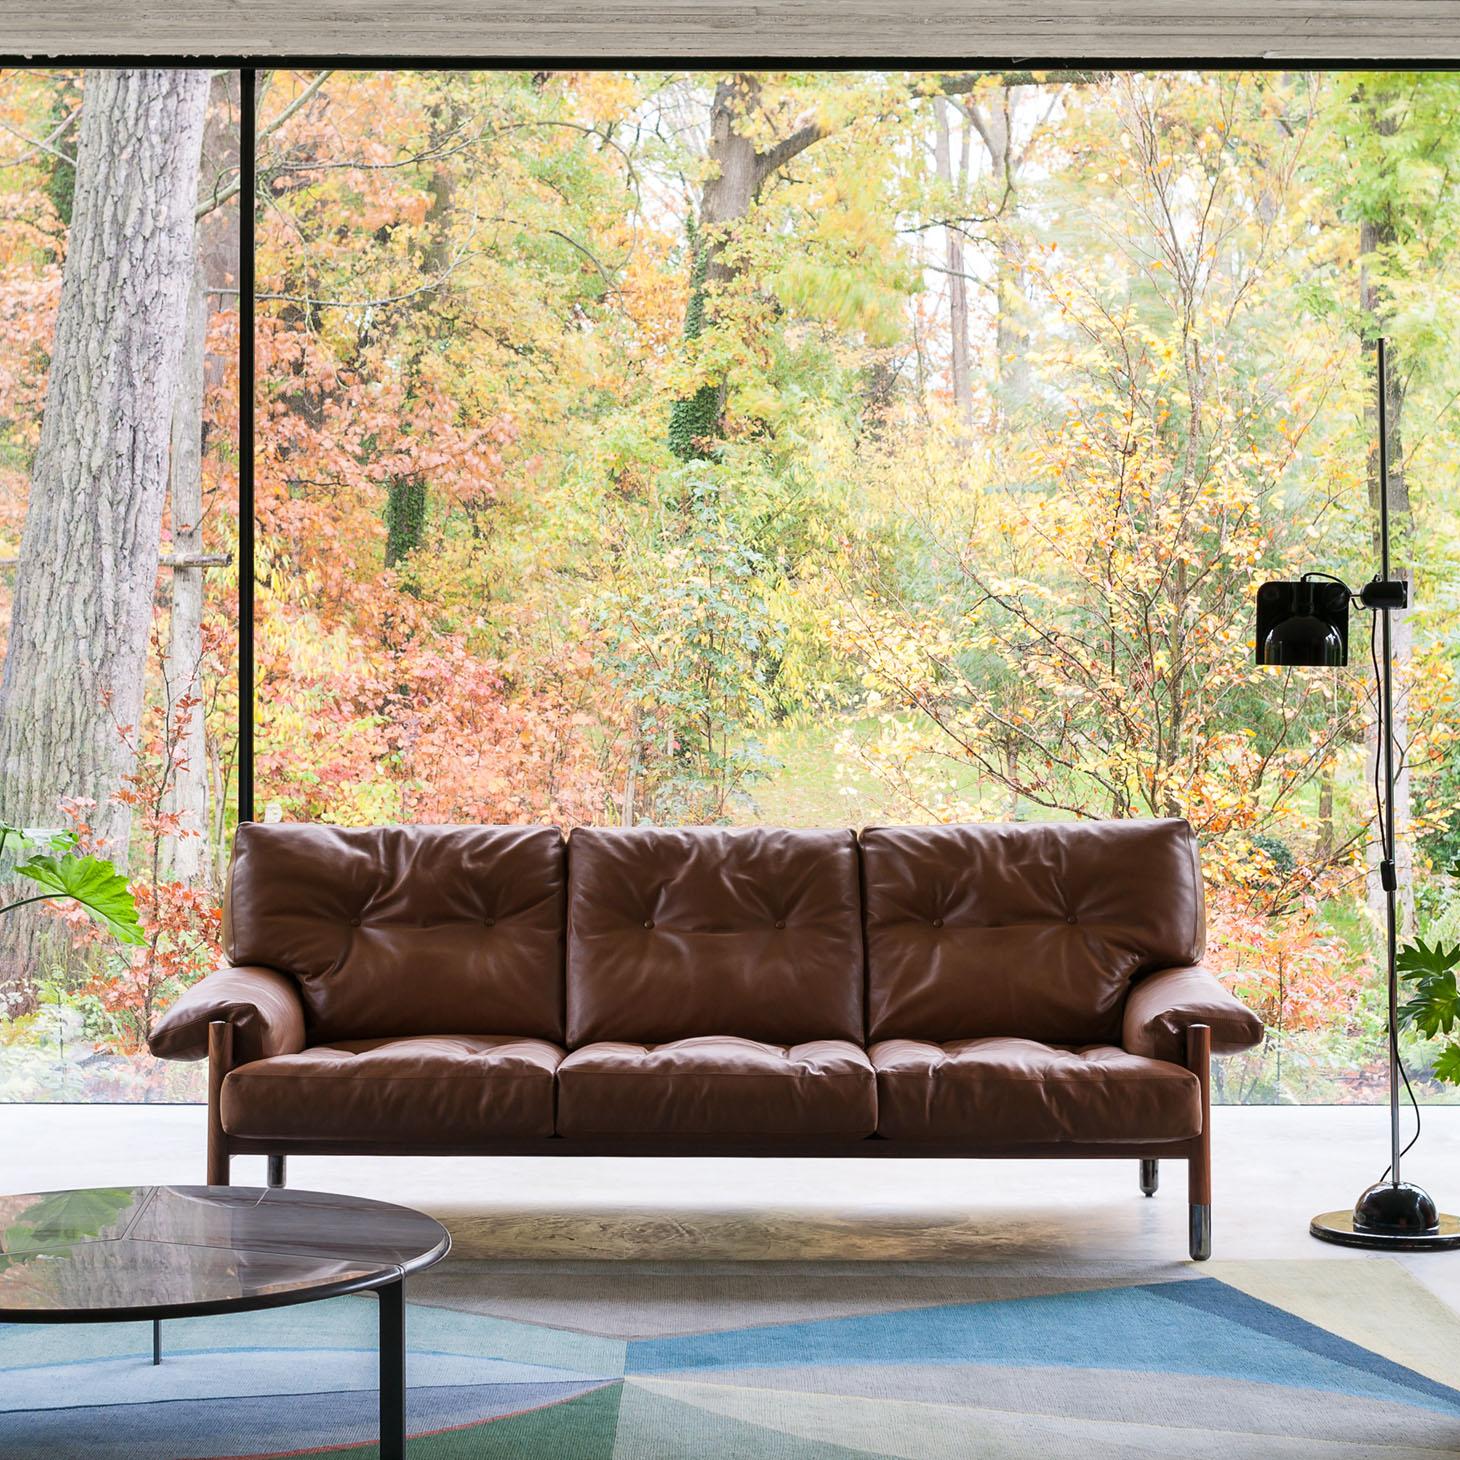 Preis für den Stoff

Sella ist von dem gleichnamigen Sessel inspiriert, der 1966 von dem berühmten italienischen Architekten Carlo de Carli entworfen wurde. Das sehr elegante Sofa wird aus den besten Materialien hergestellt: Nussbaumholz, elegante